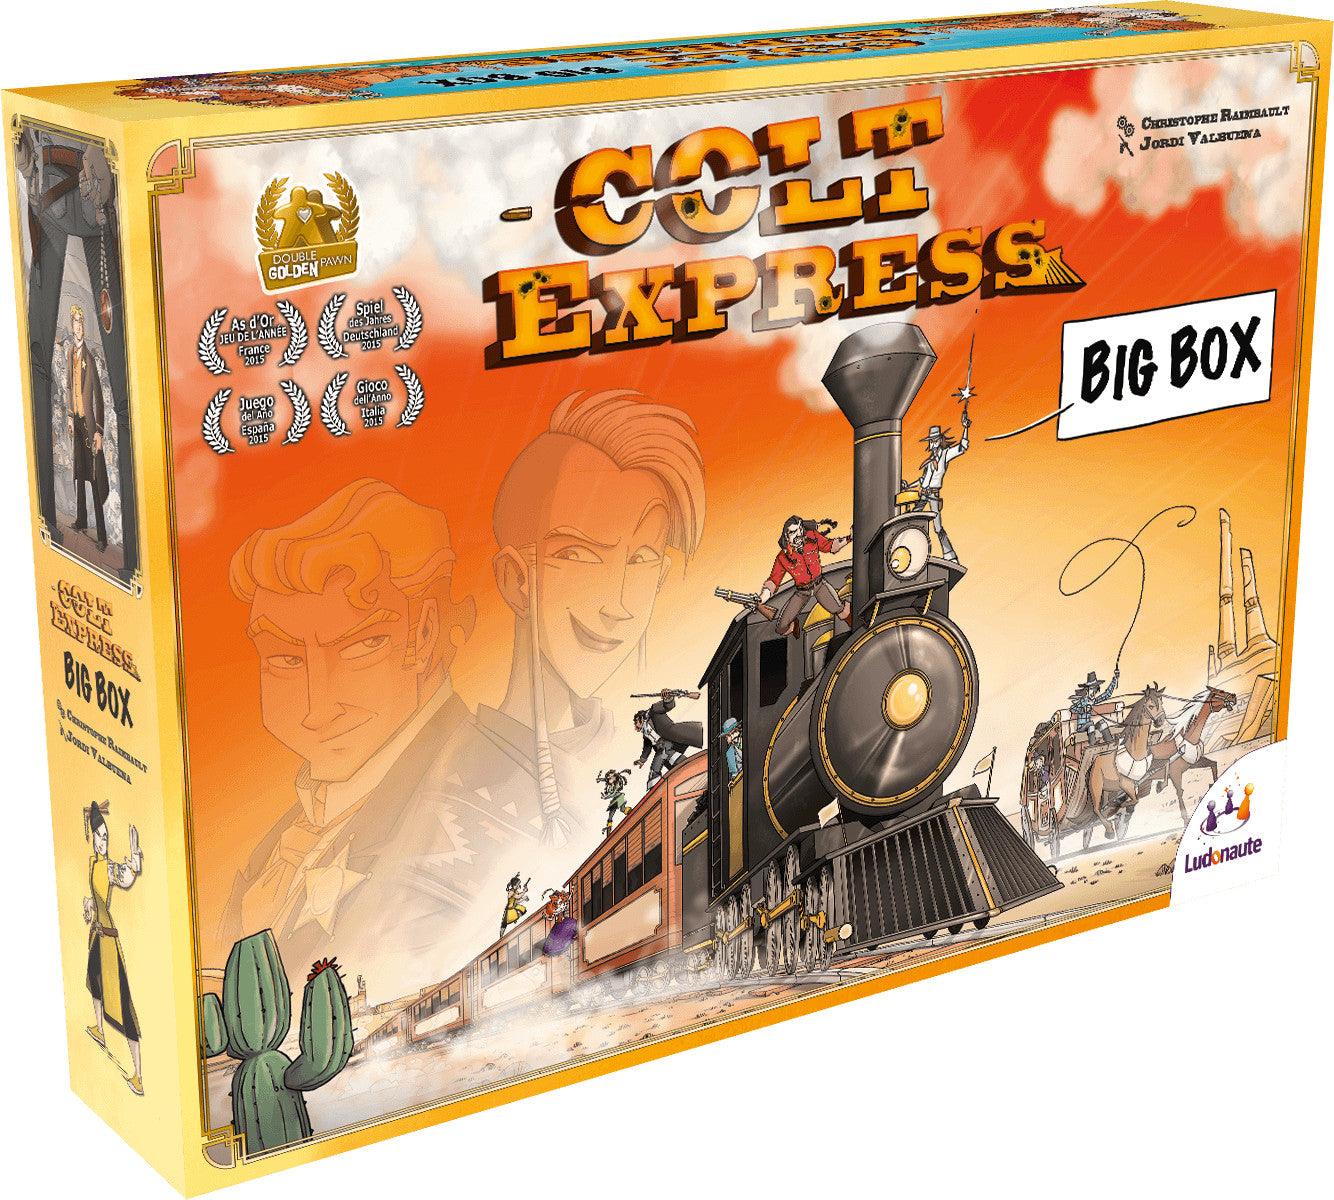 VR-92534 Colt Express Big Box - Ludonaute - Titan Pop Culture